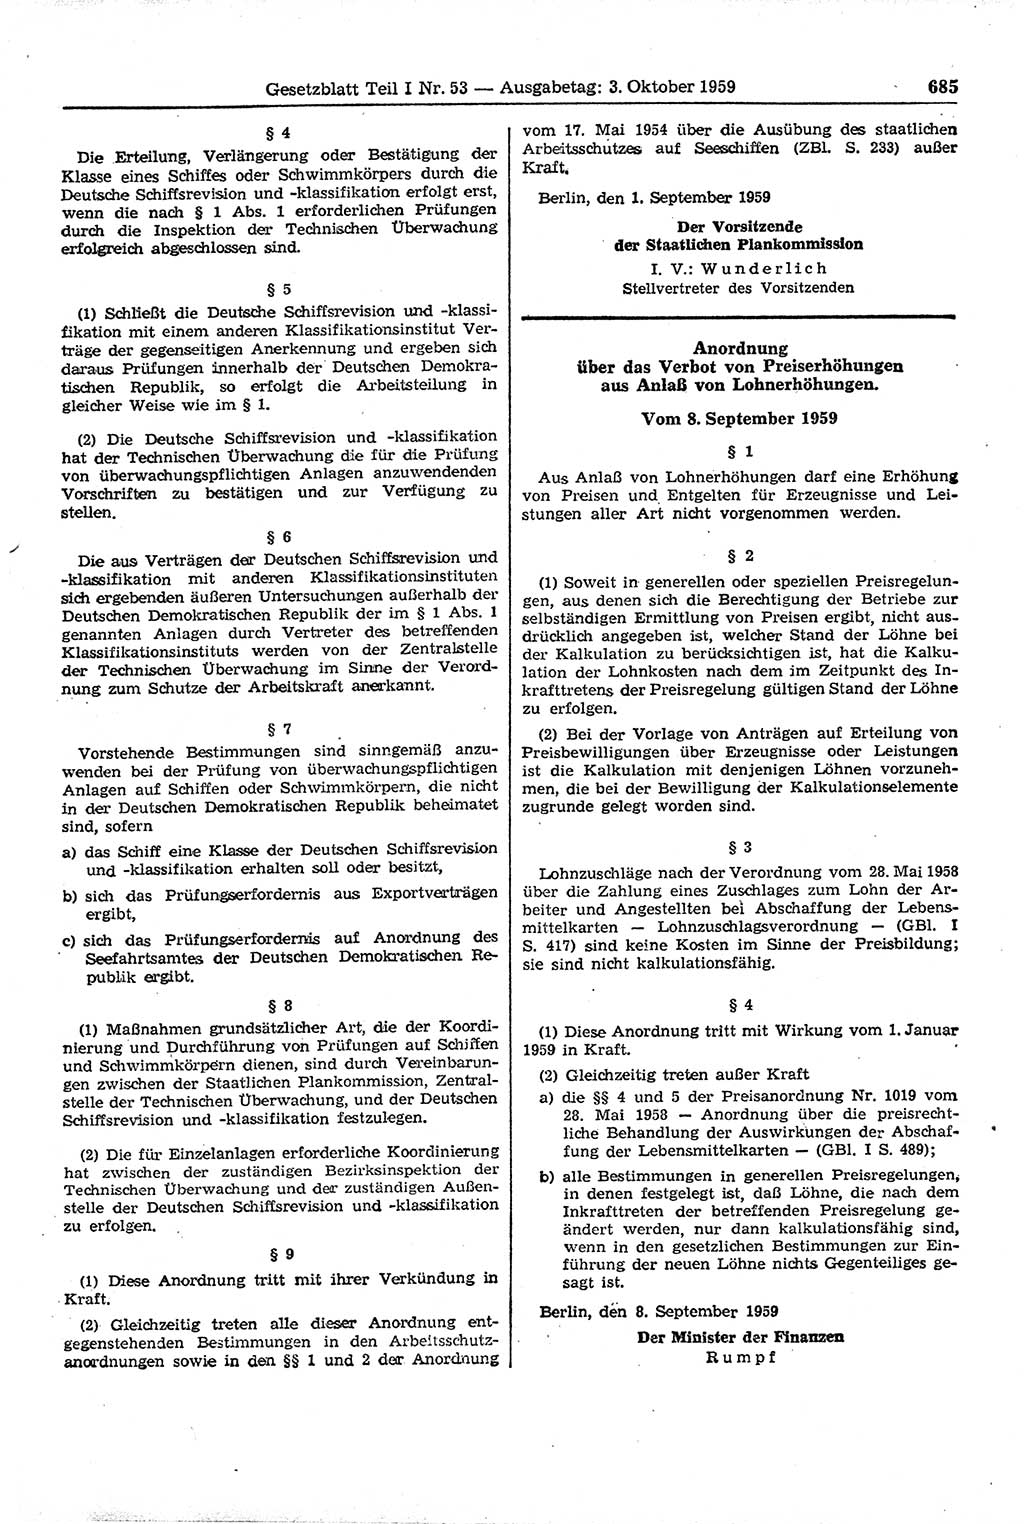 Gesetzblatt (GBl.) der Deutschen Demokratischen Republik (DDR) Teil Ⅰ 1959, Seite 685 (GBl. DDR Ⅰ 1959, S. 685)